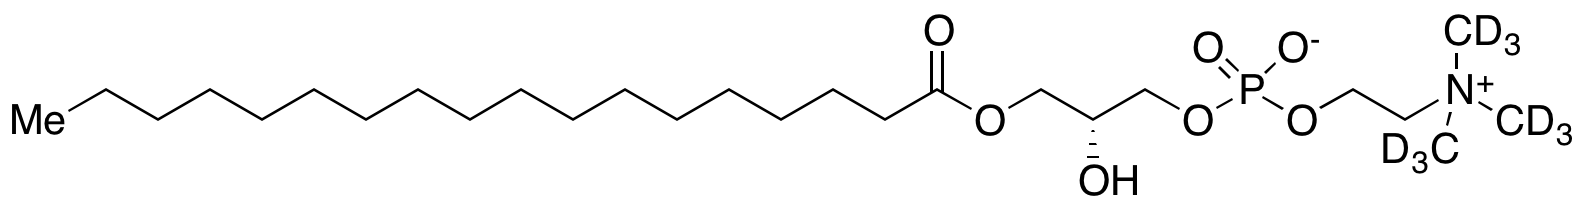 Stearoyl L-α-Lysolecithin-d<sub>9</sub>